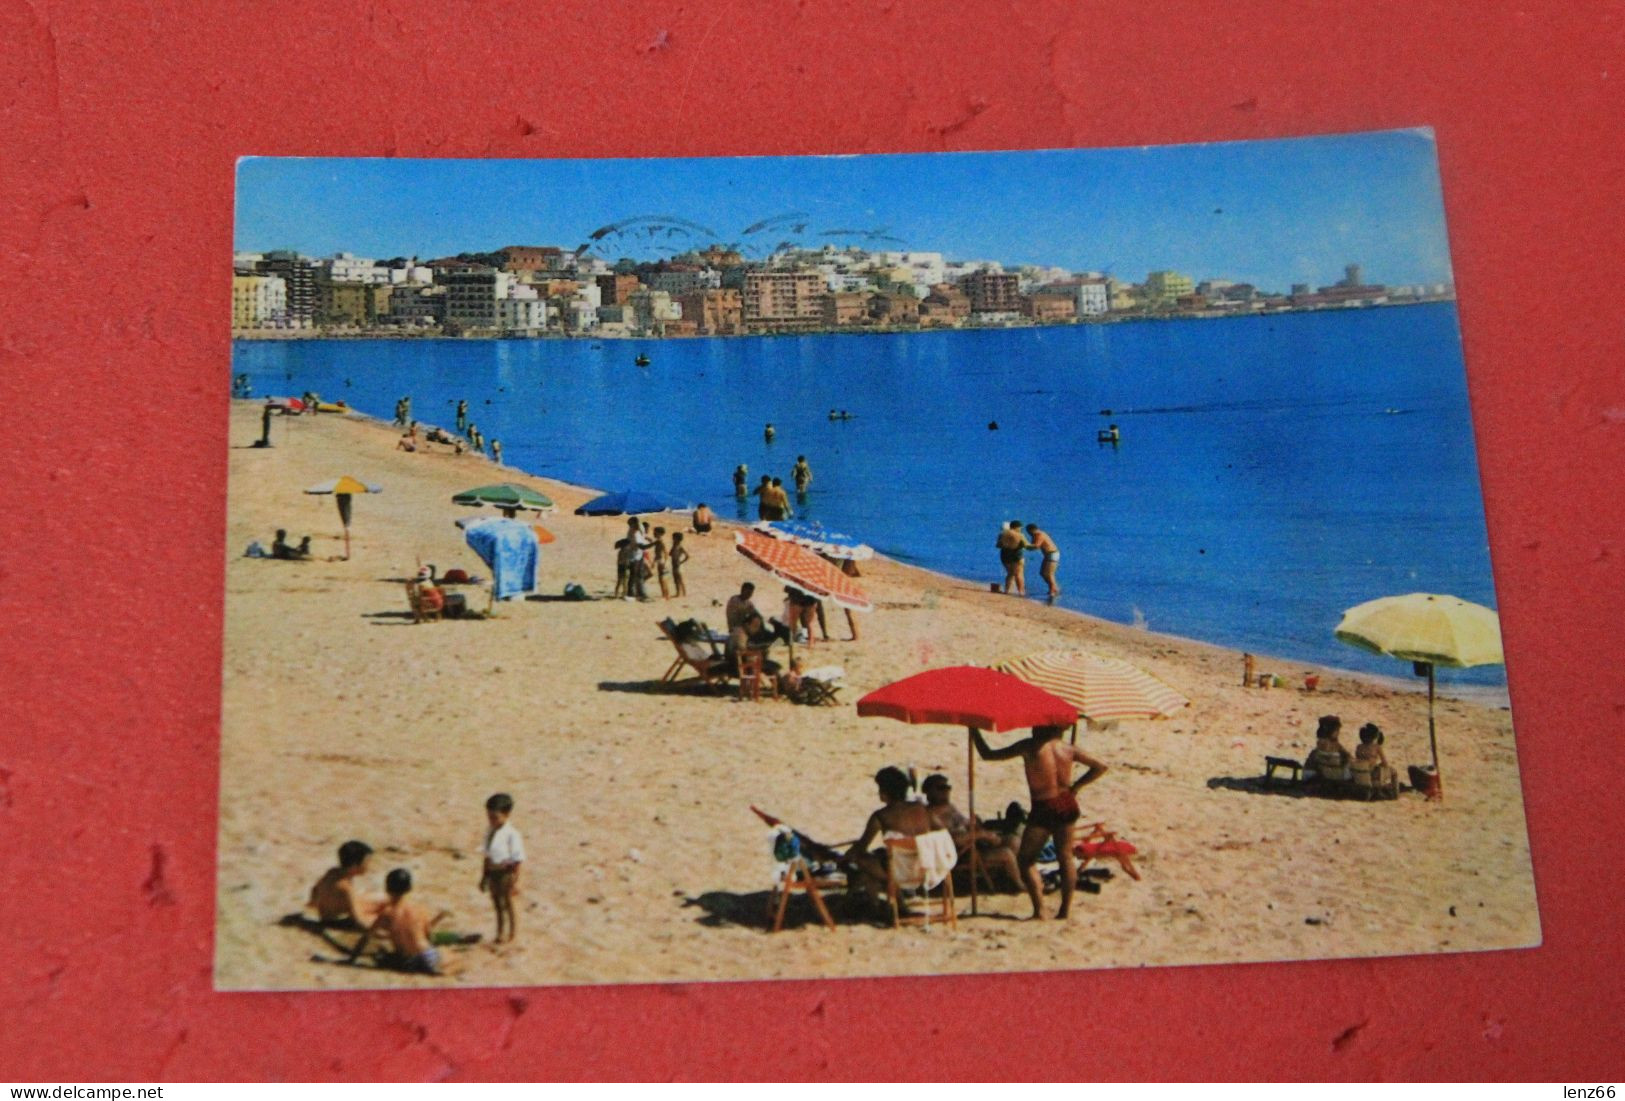 Crotone La Spiaggia 1968 - Crotone